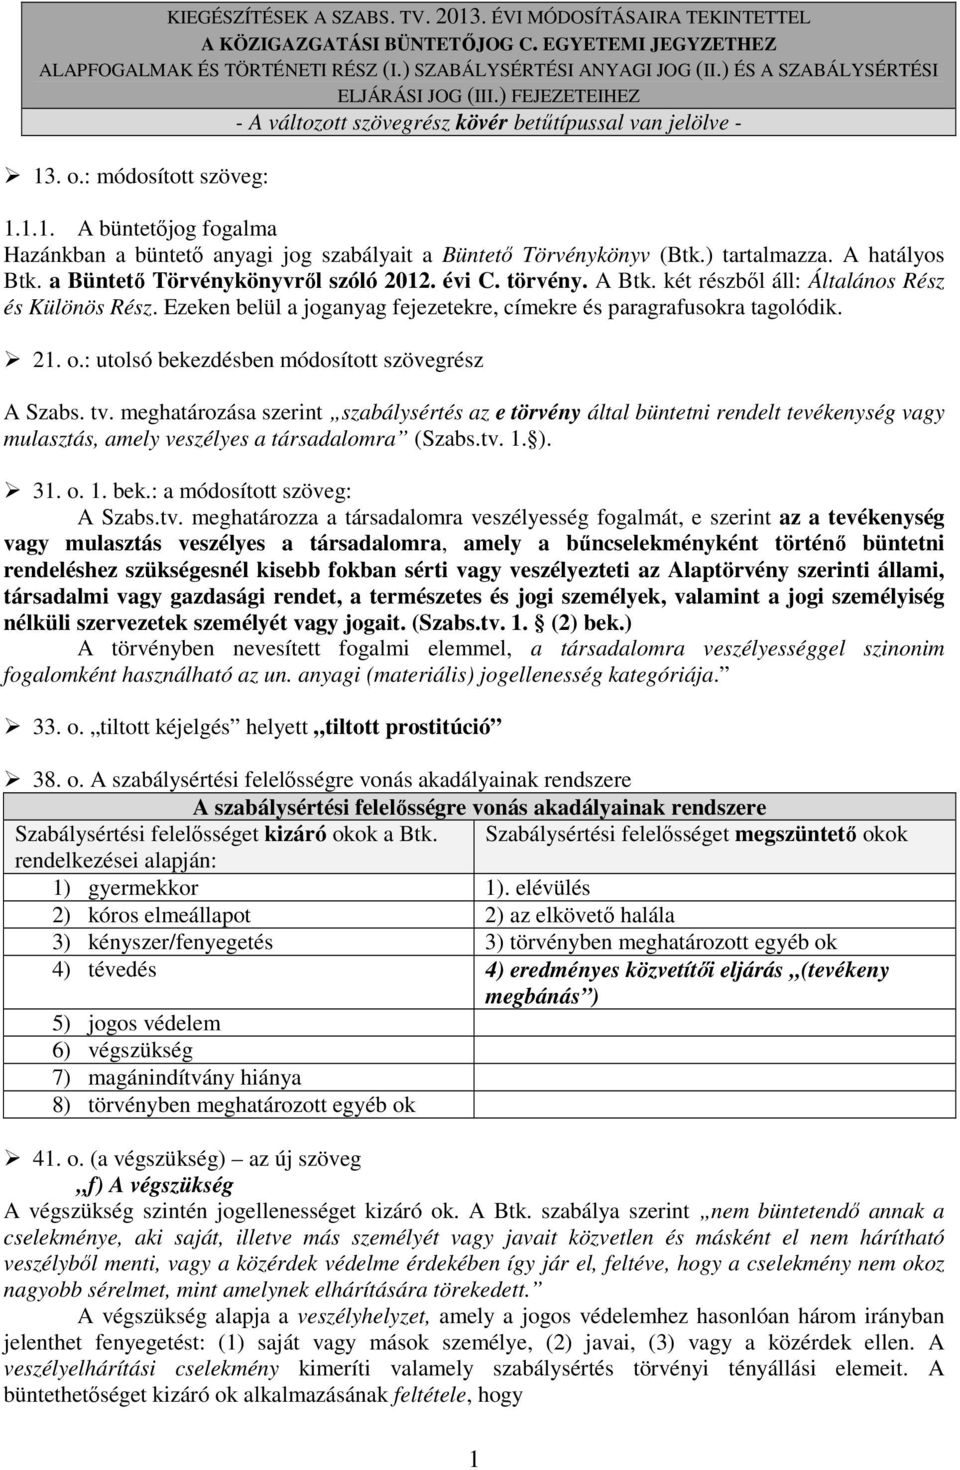 . o.: módosított szöveg: 1.1.1. A büntetıjog fogalma Hazánkban a büntetı anyagi jog szabályait a Büntetı Törvénykönyv (Btk.) tartalmazza. A hatályos Btk. a Büntetı Törvénykönyvrıl szóló 2012. évi C.